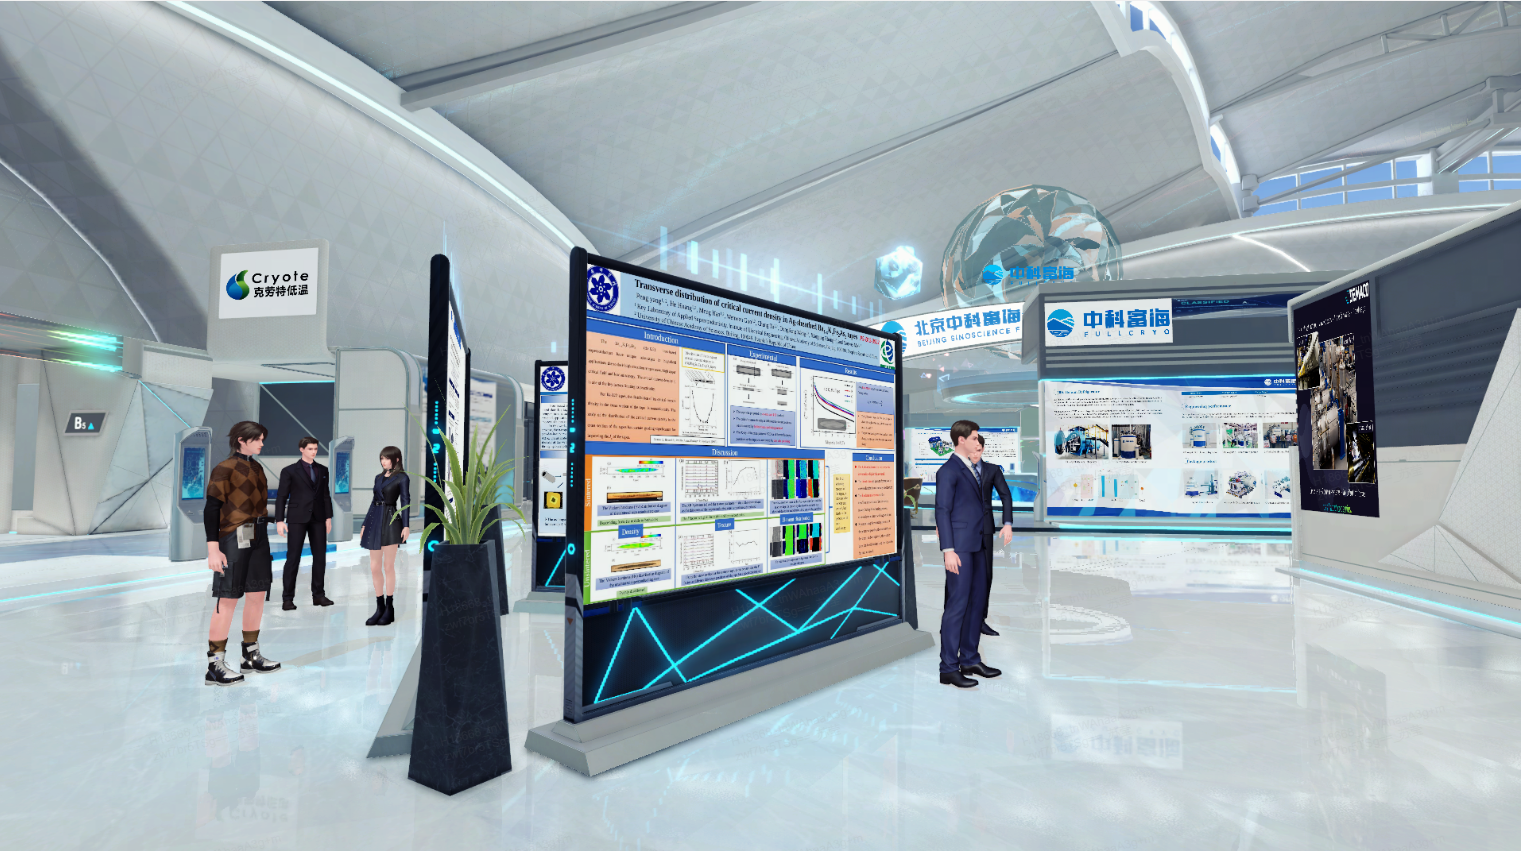 这是一张展览会的图片，几位参观者正在查看展板，展厅内设计现代，以白色和蓝色为主调，显得科技感十足。